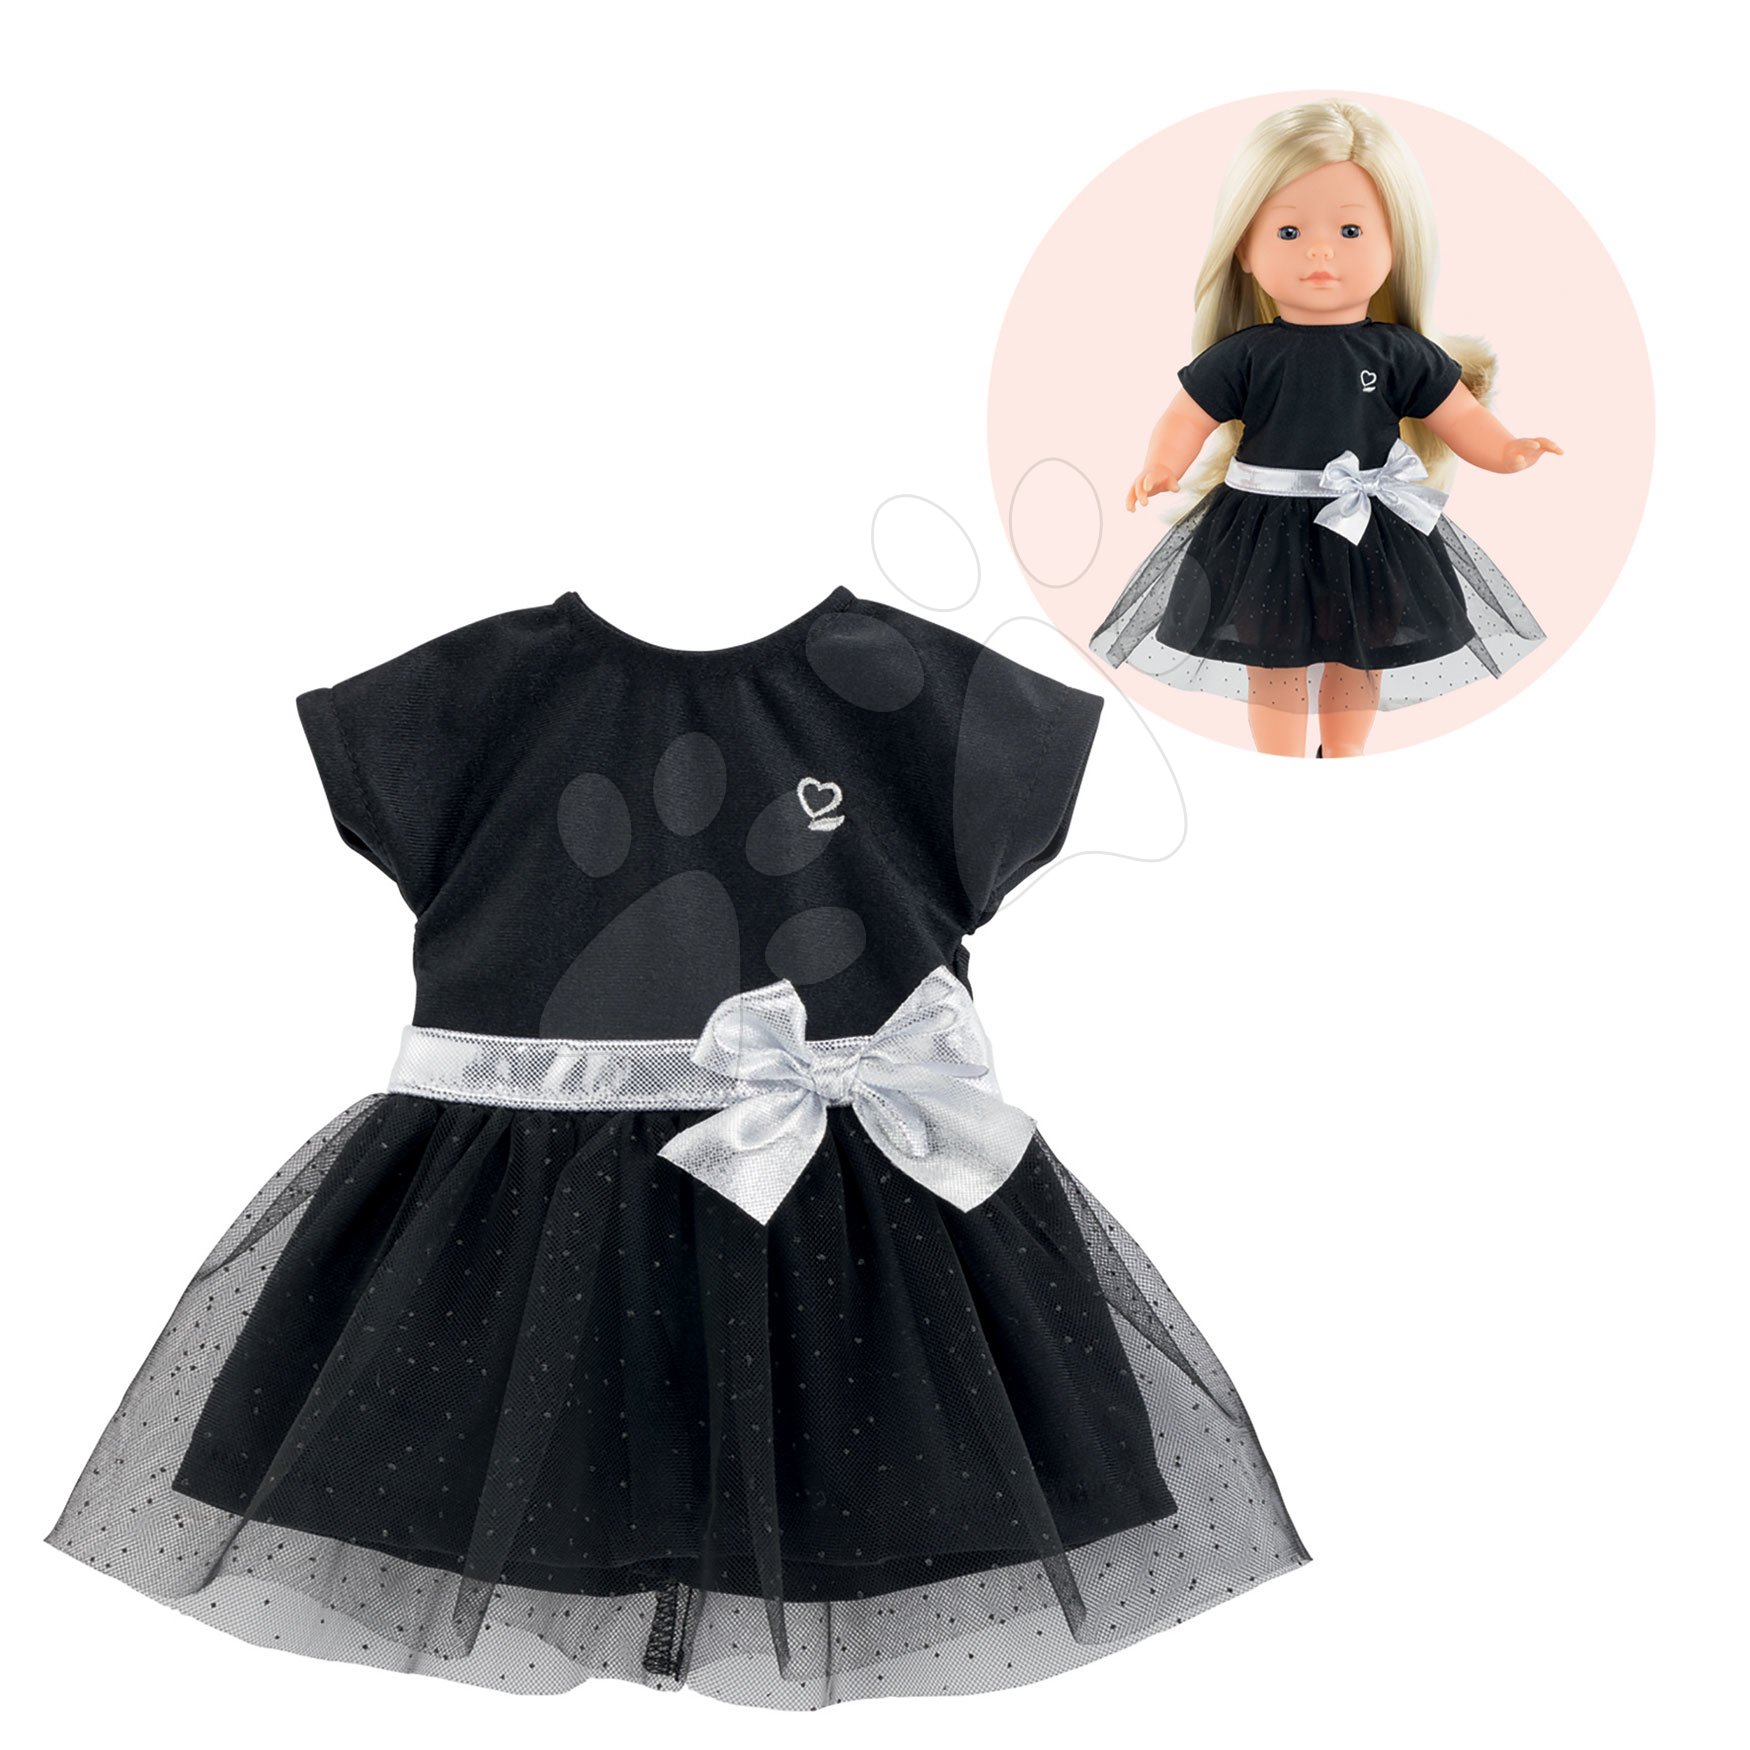 Játékbaba ruhák - Ruhácska Evening Dress Black Ma Corolle 36 cm játékbaba részére 4 évtől